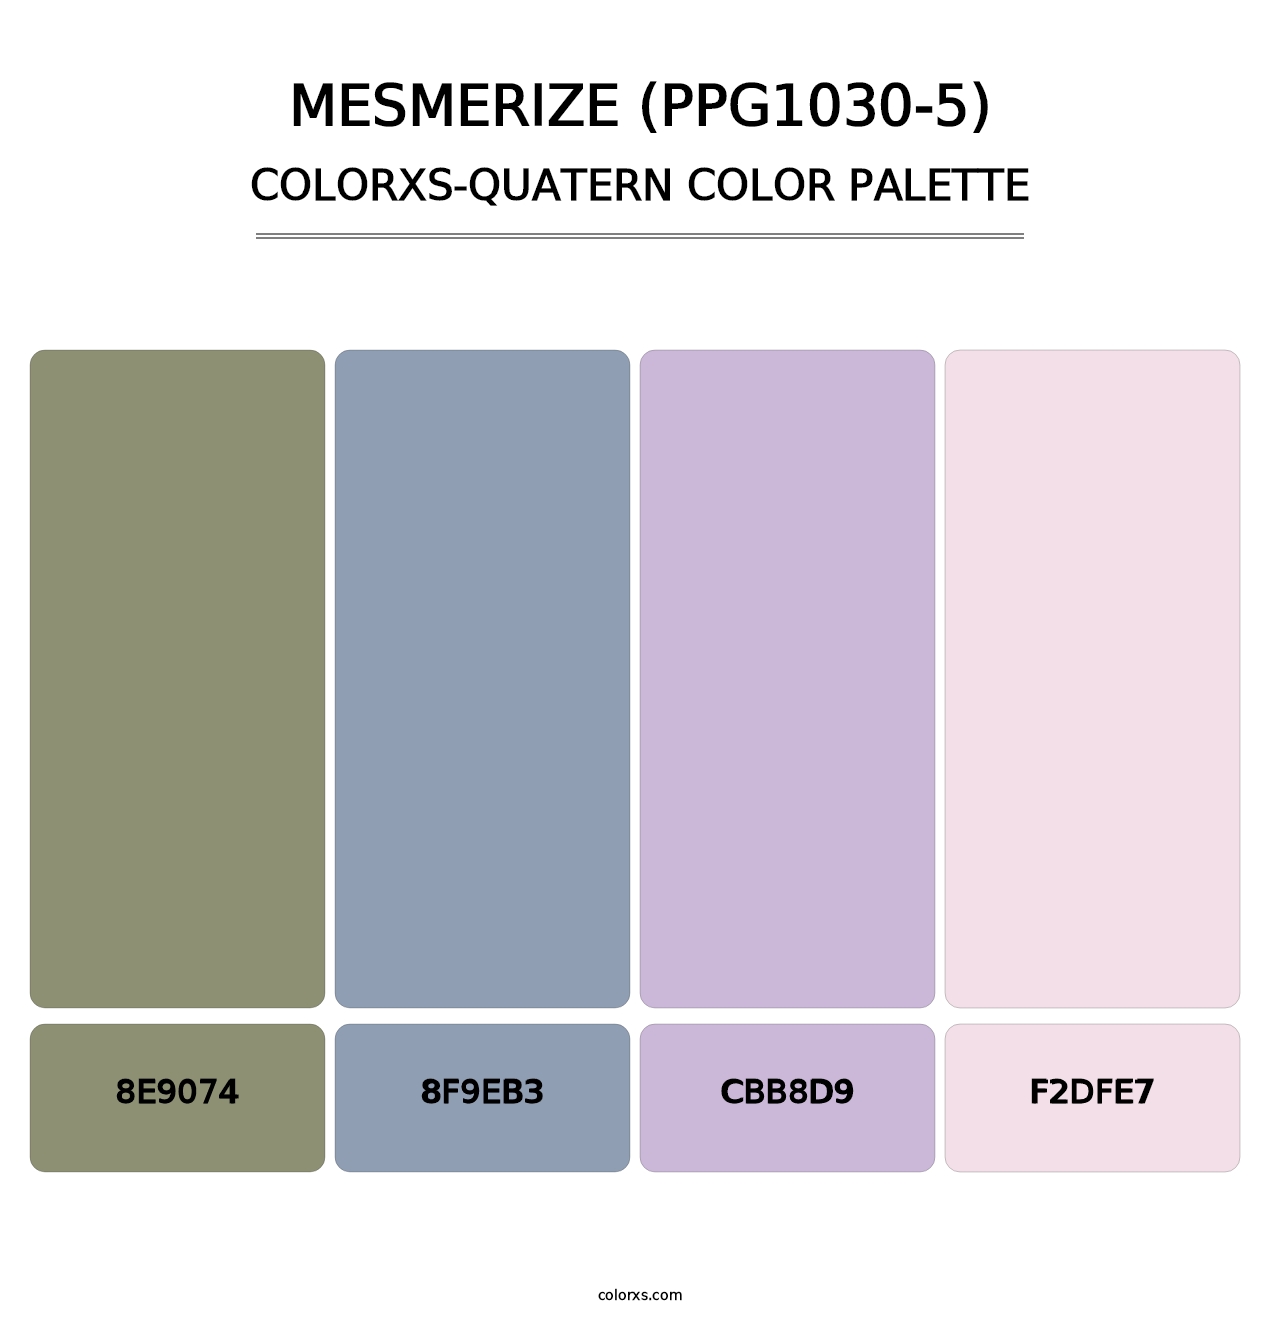 Mesmerize (PPG1030-5) - Colorxs Quatern Palette